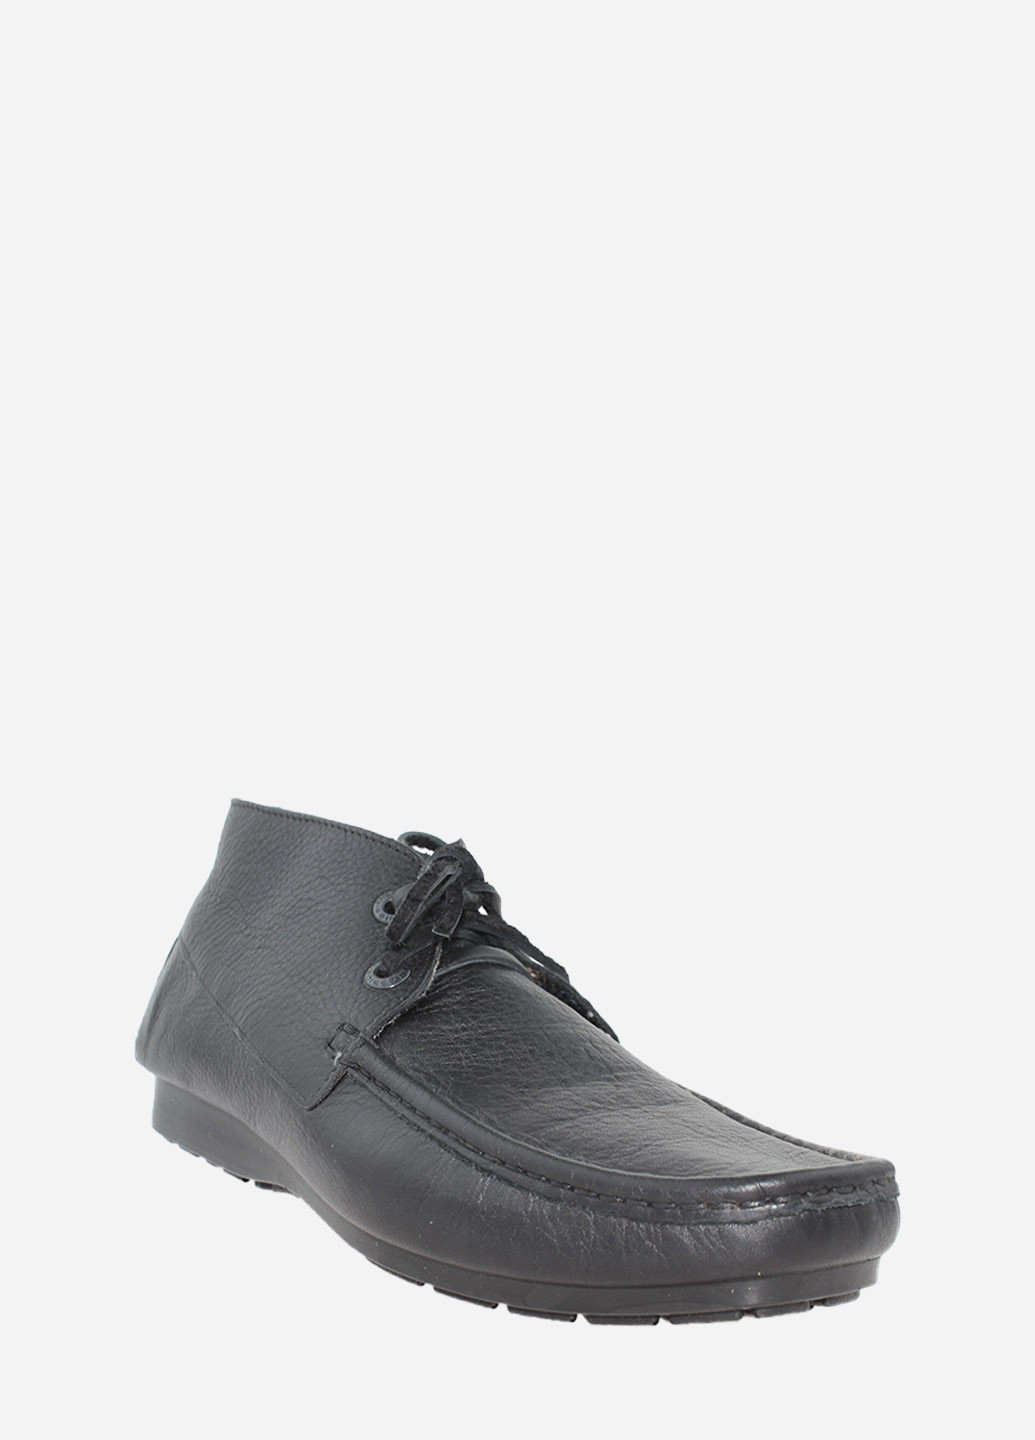 Черные осенние ботинки rt733-02-31 черный Tibet